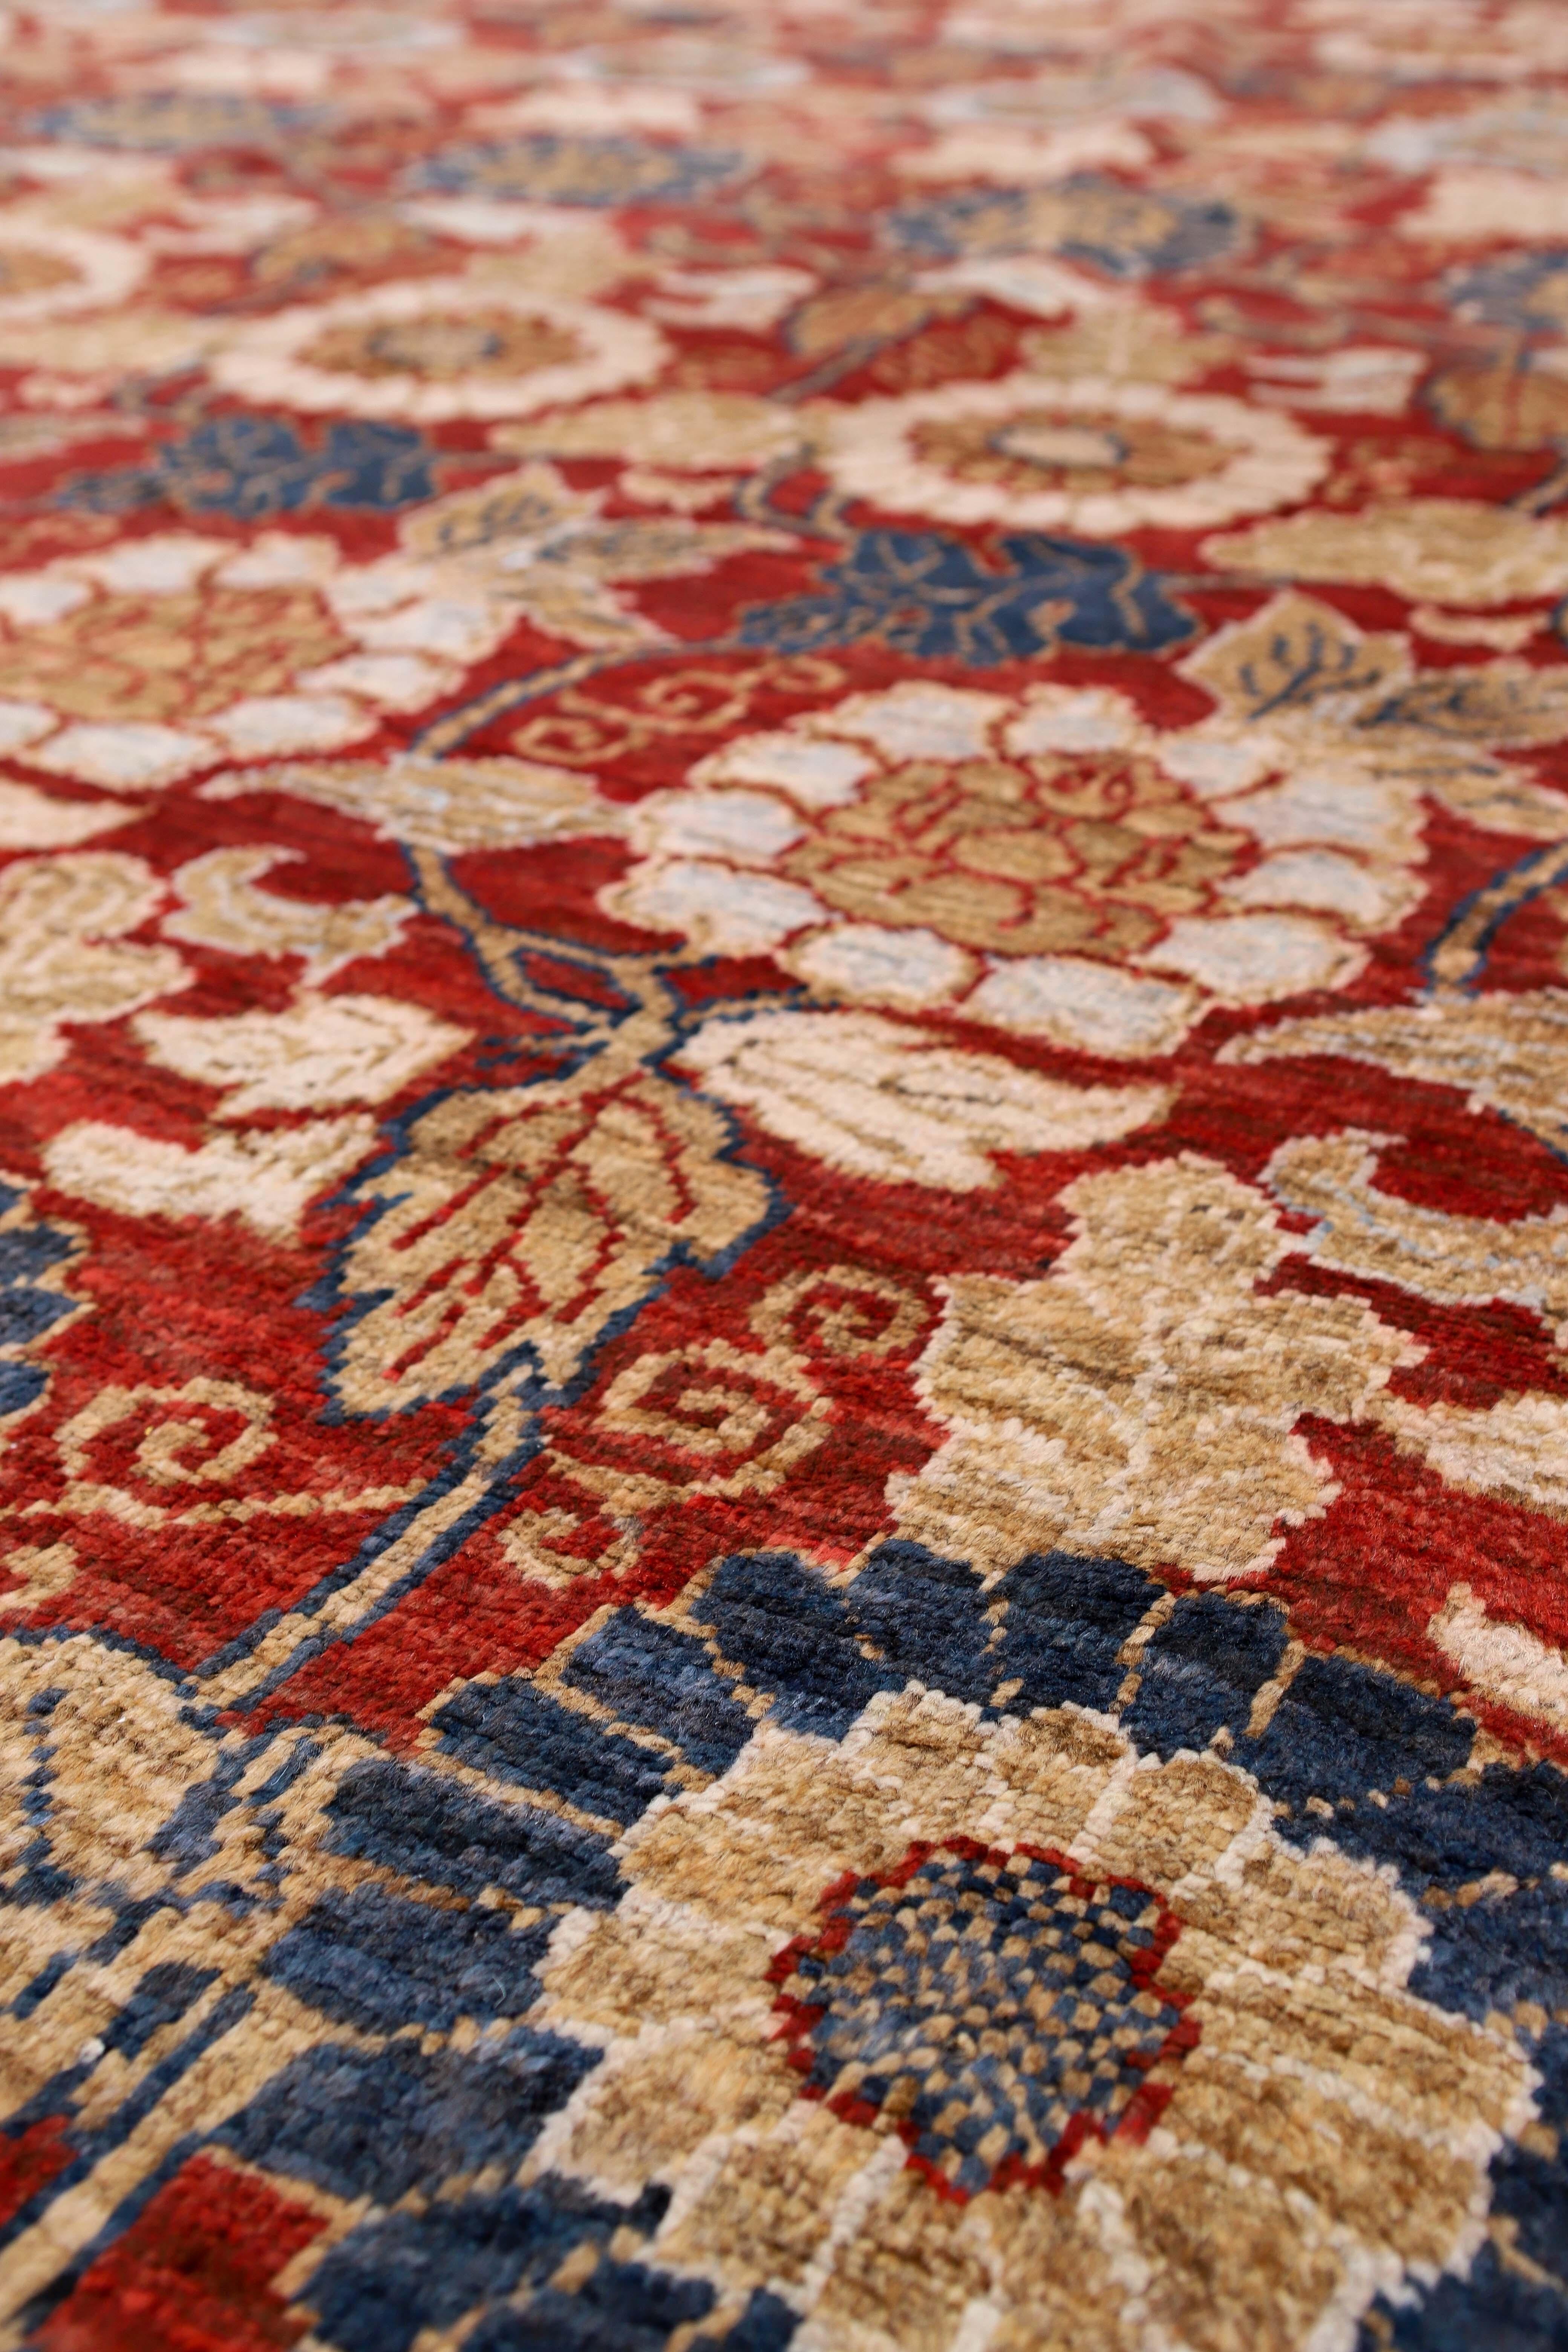 Tapis afghans rouges à motifs floraux 10 x 14.
Noué à la main avec de la laine filée à la main, tissé en Afghanistan.
Ce tapis magnifiquement conçu ne manquera pas de se faire remarquer dans n'importe quelle pièce.

Fabriqué en 100%